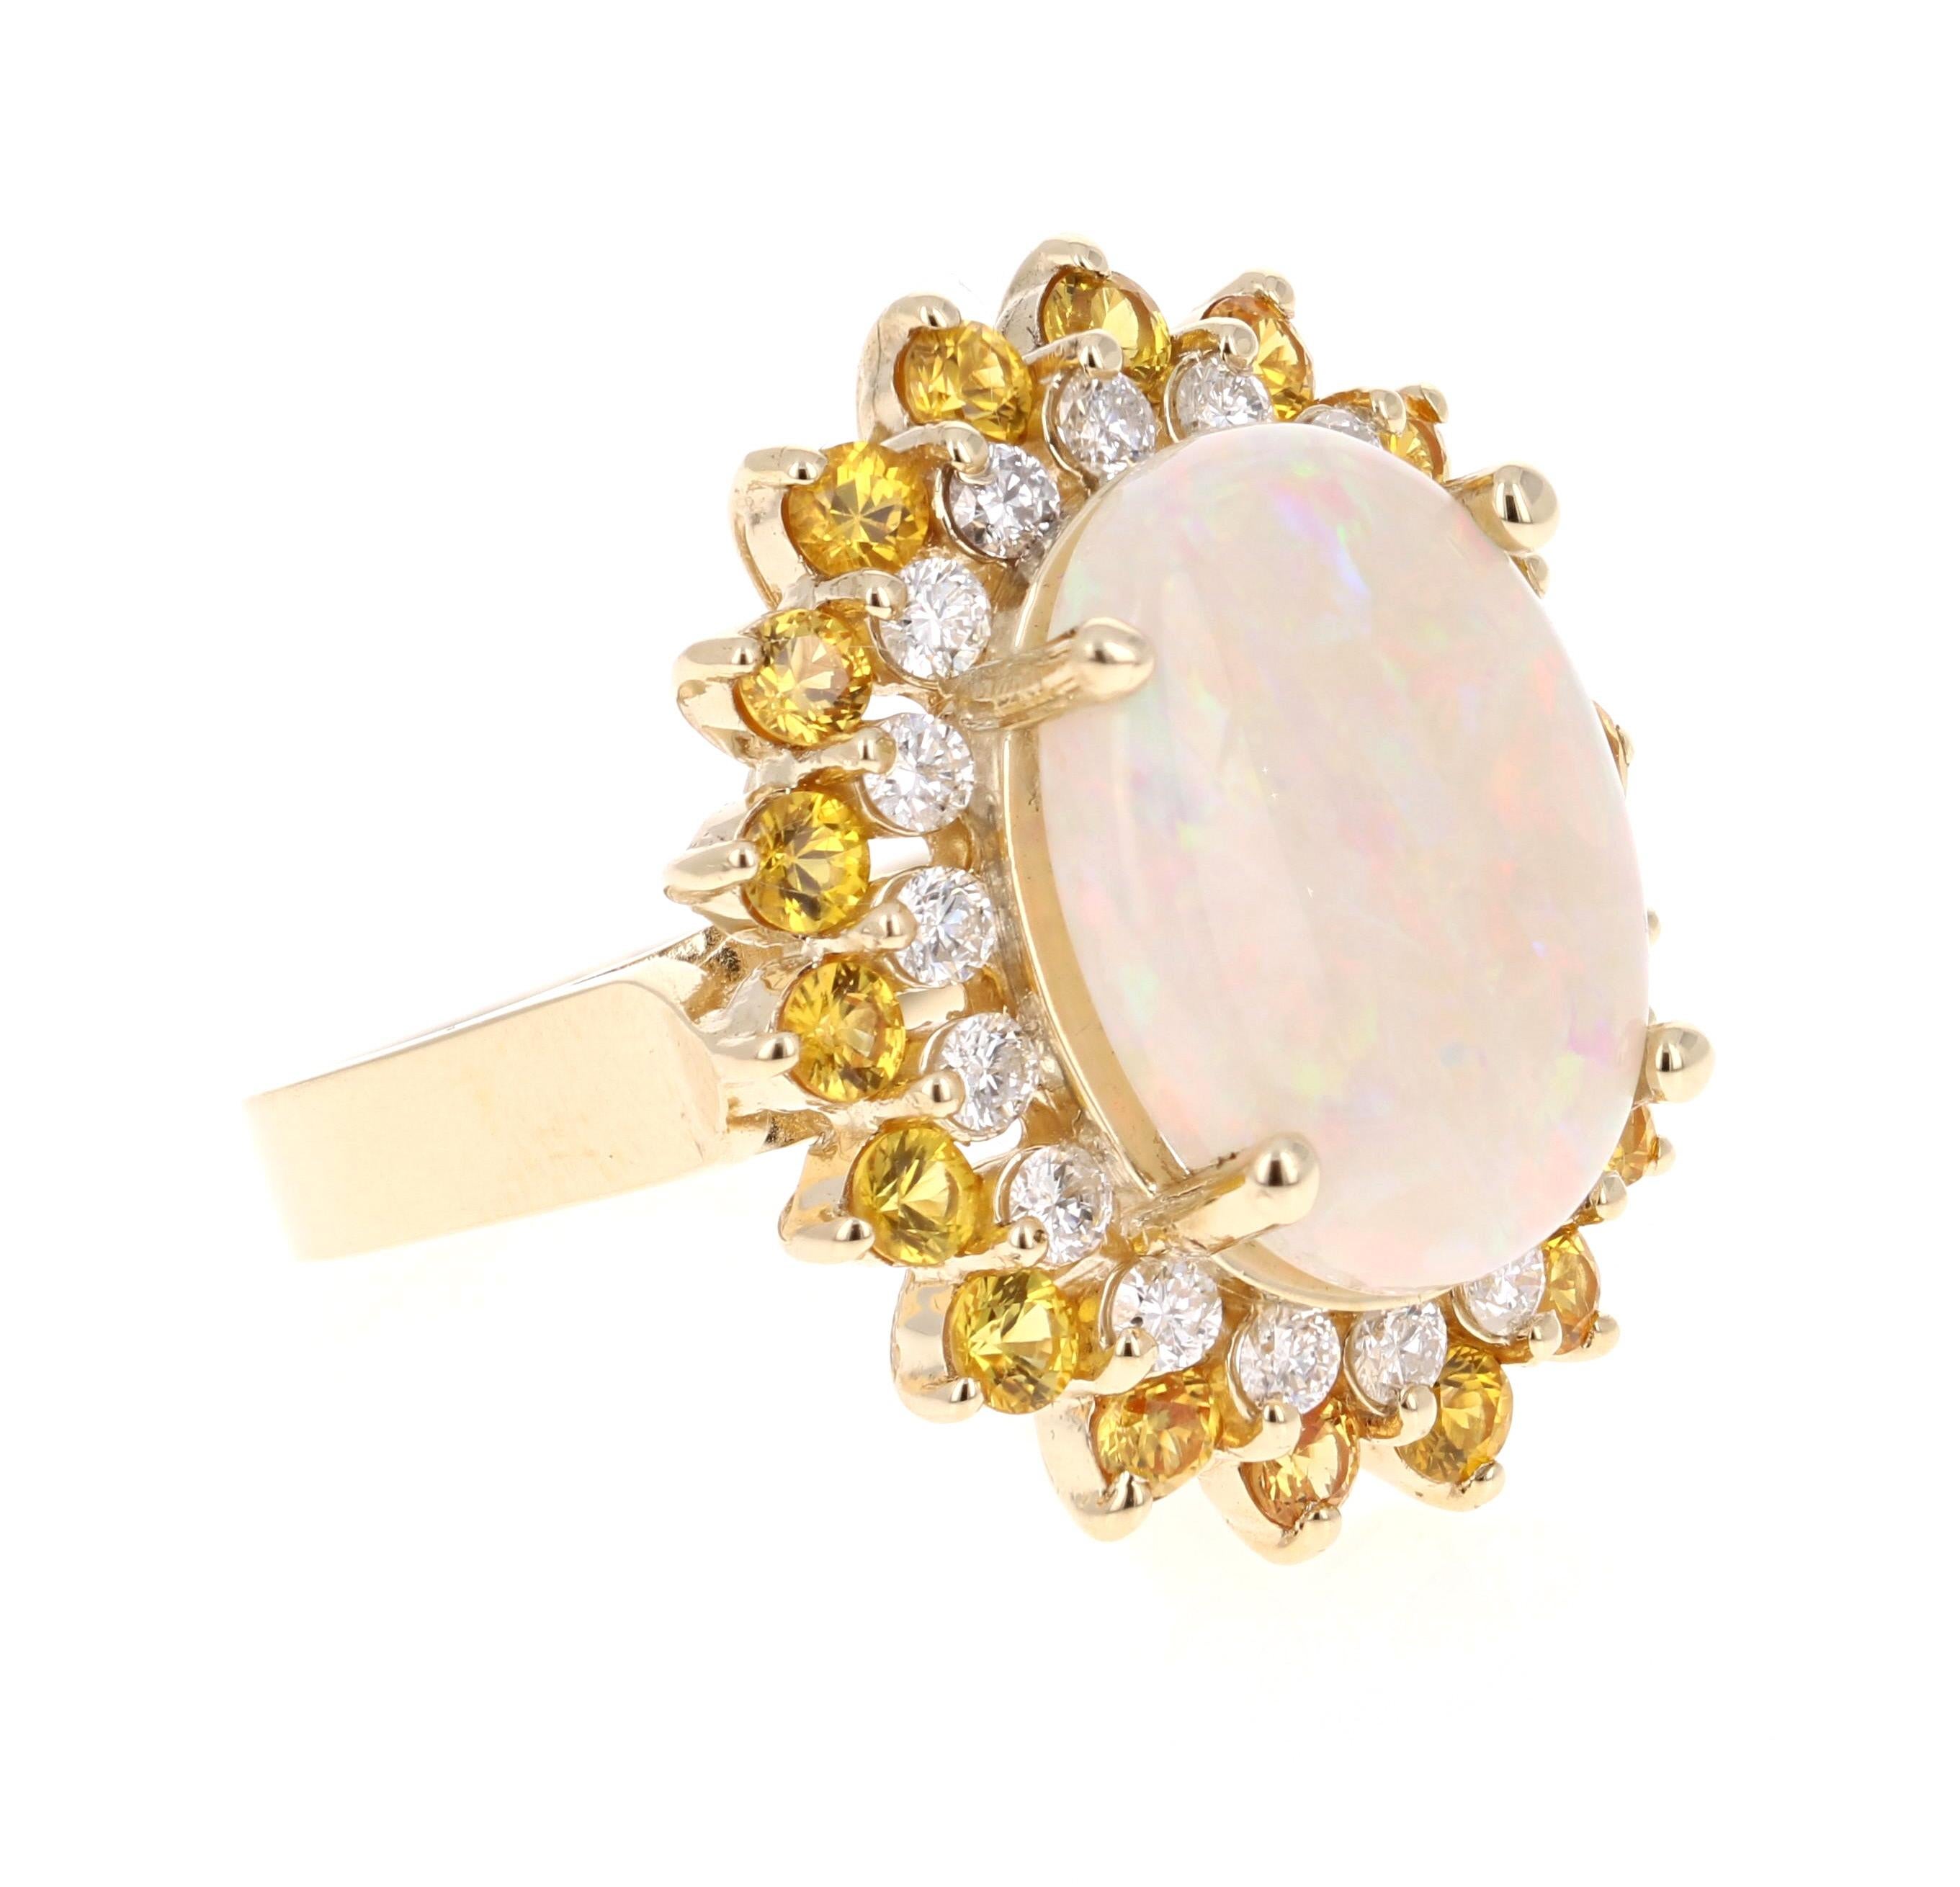 Wunderschöner und einzigartiger Opal- und Diamantring mit gelben Saphiren!

Dieses atemberaubende Stück hat einen opulenten Opal von 5,47 Karat in der Mitte des Rings.  Der Opal ist umgeben von einer Reihe von  18 Diamanten im Rundschliff mit einem